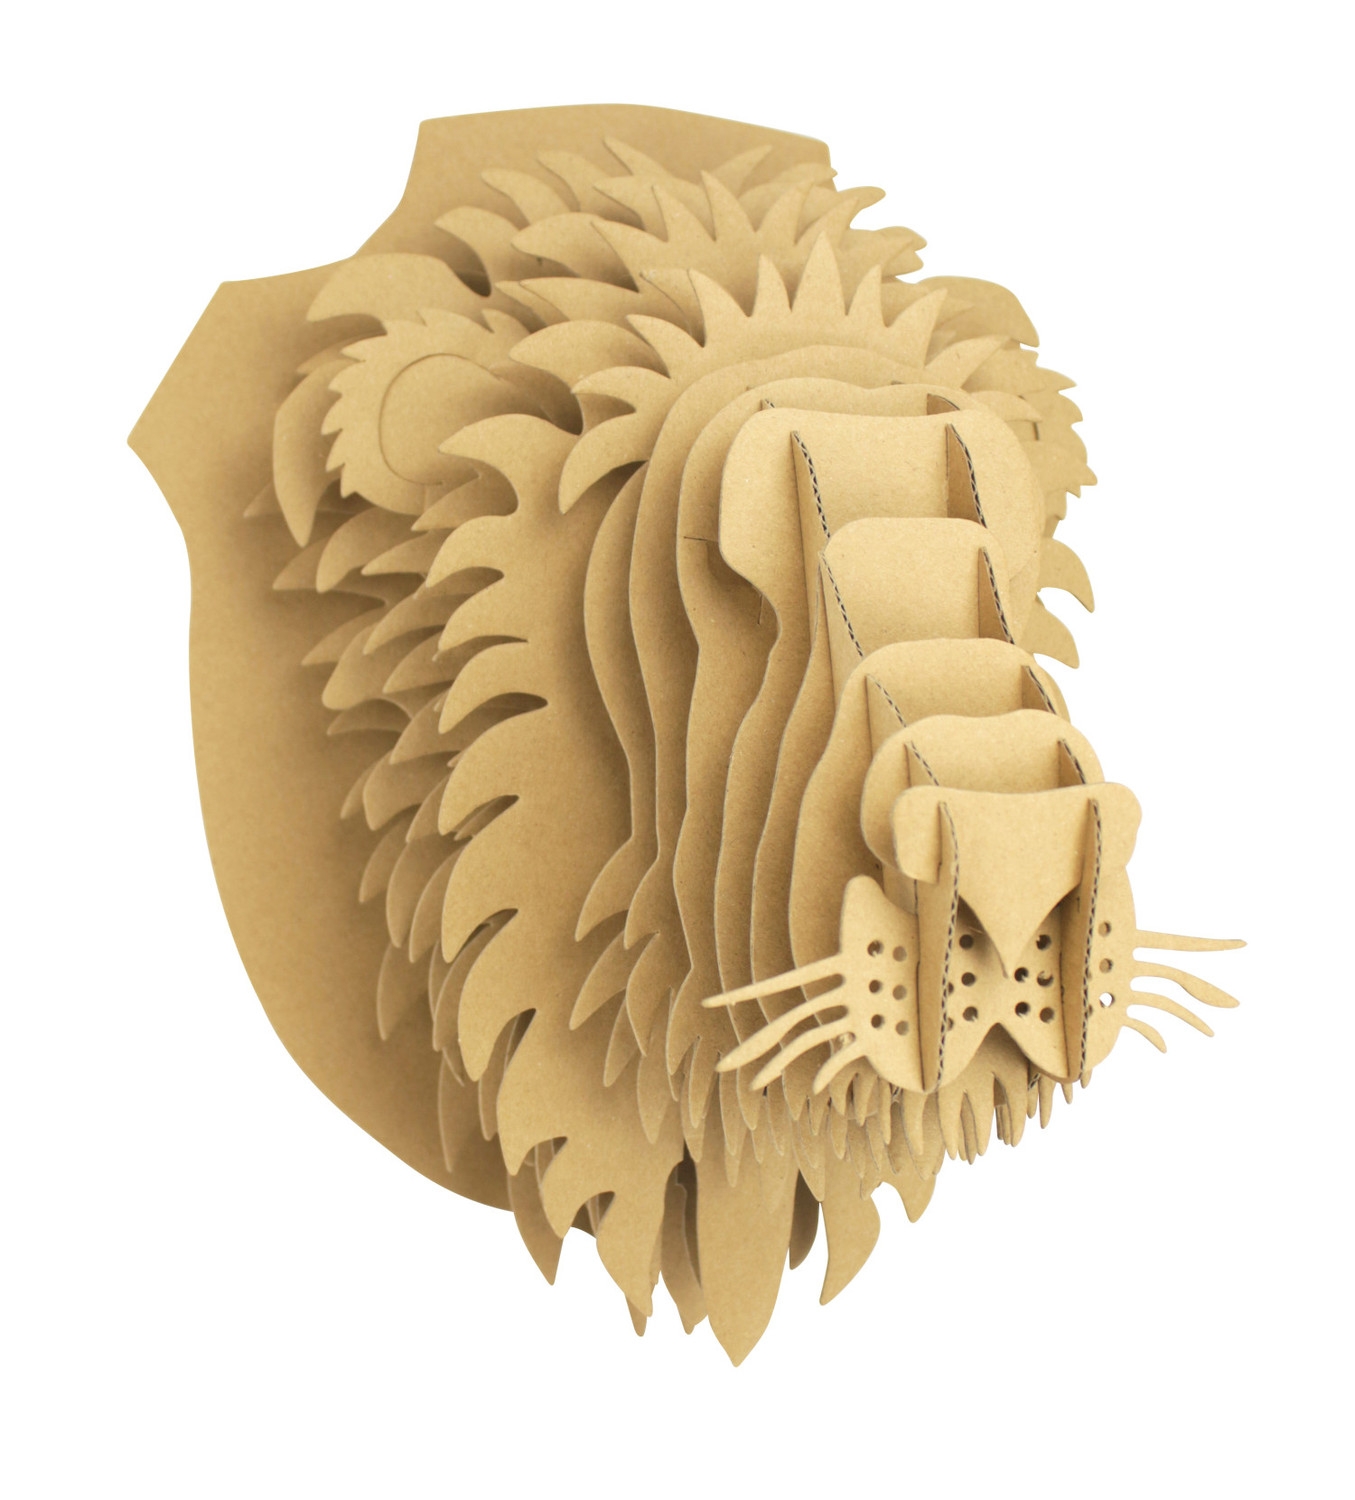 Graine Créative - Loisirs créatifs - Maquette 3D - Lion